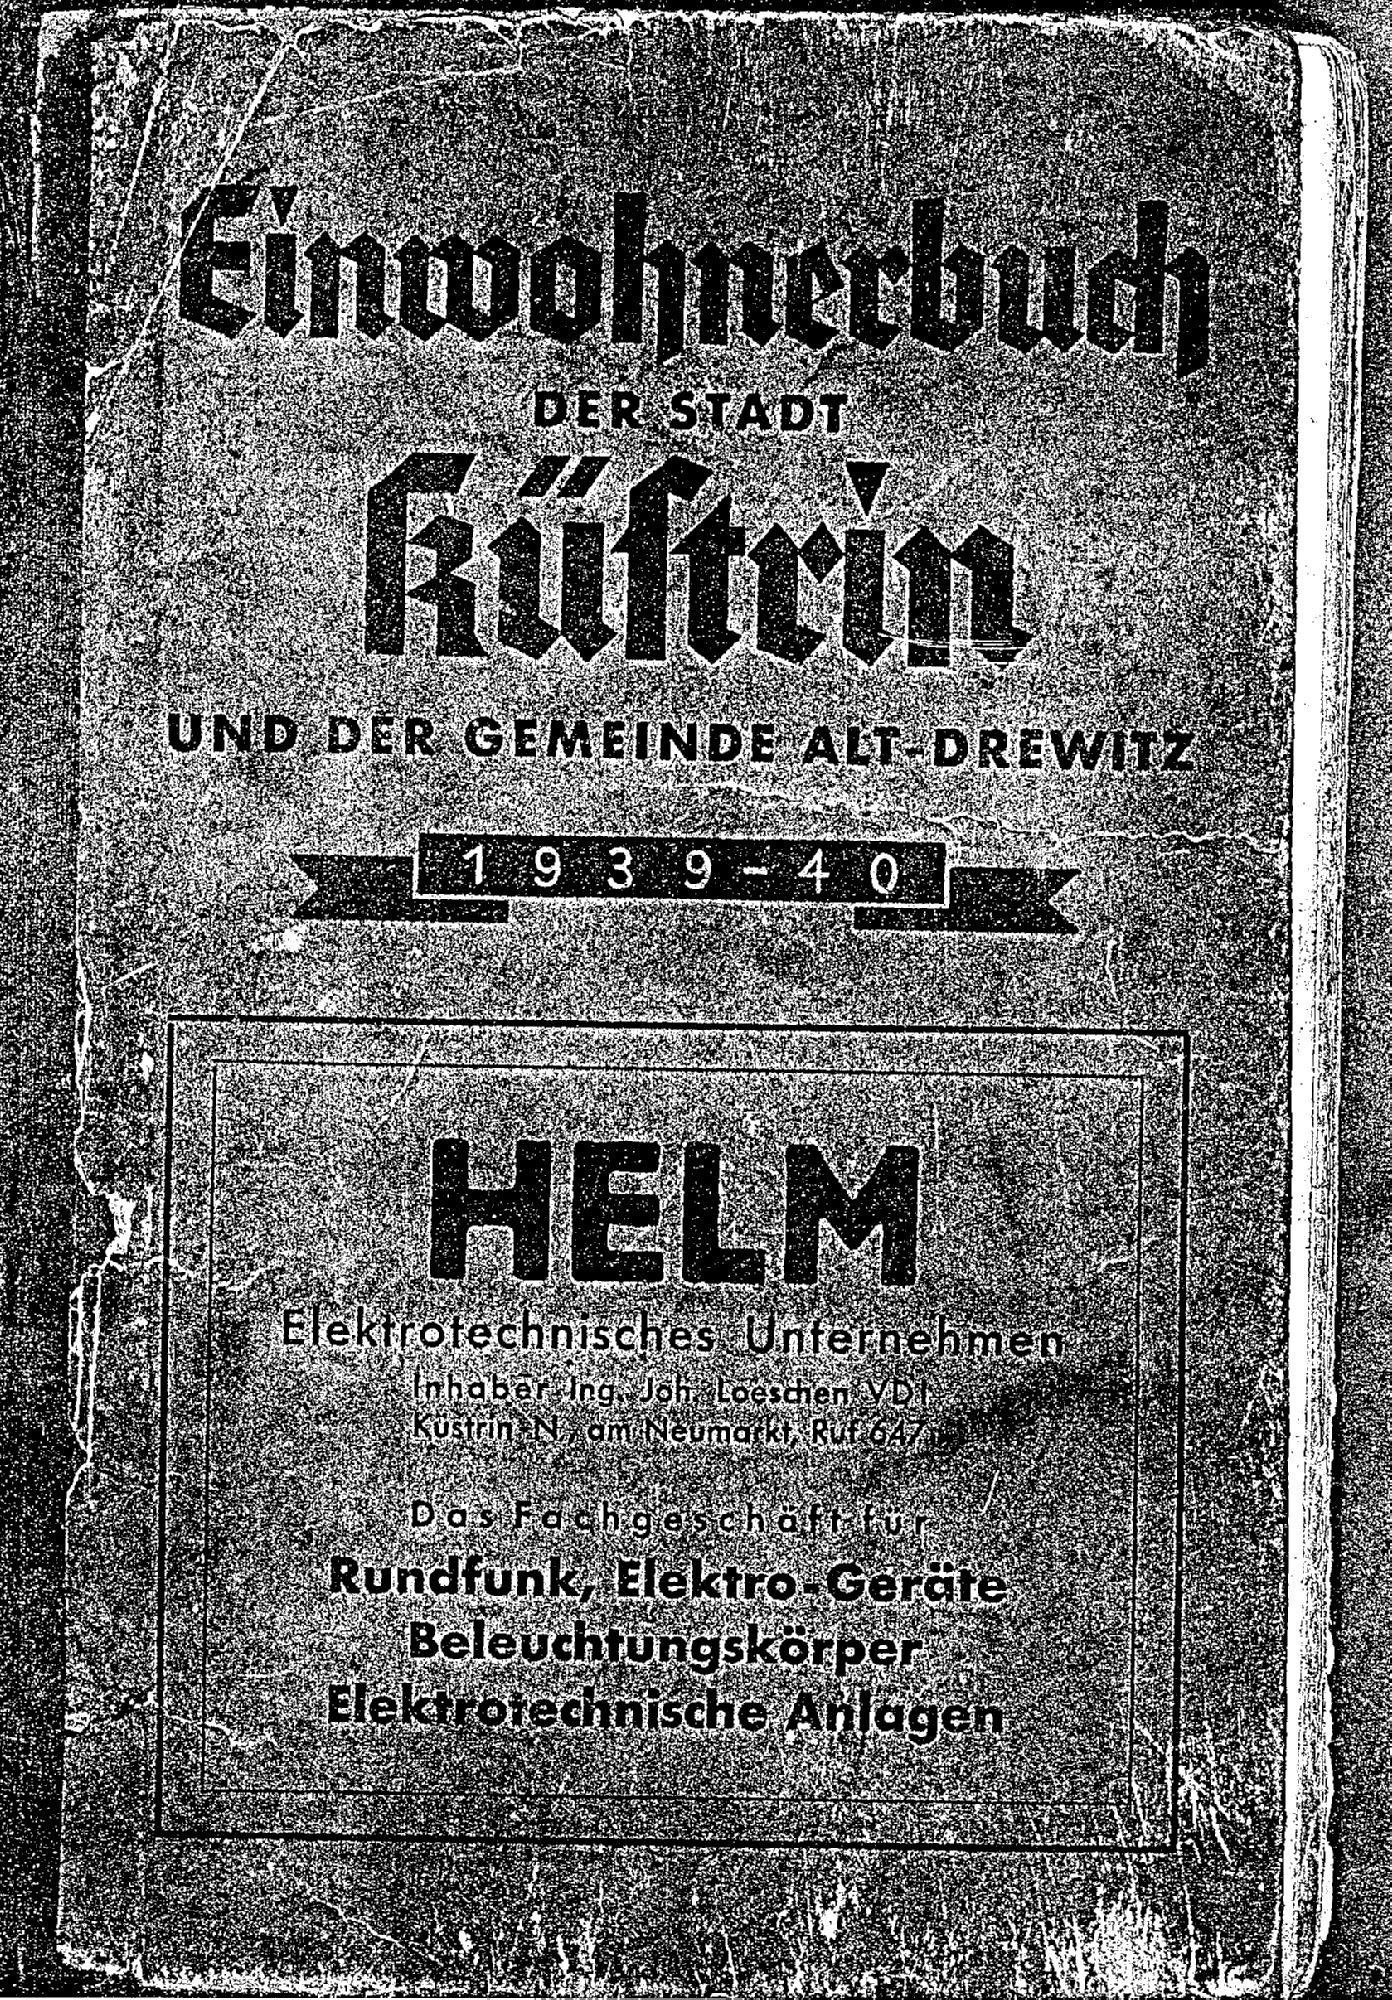 Einwohnerbuch der Stadt Küstrin und der Gemeinde Alt-Drewitz 1939/40